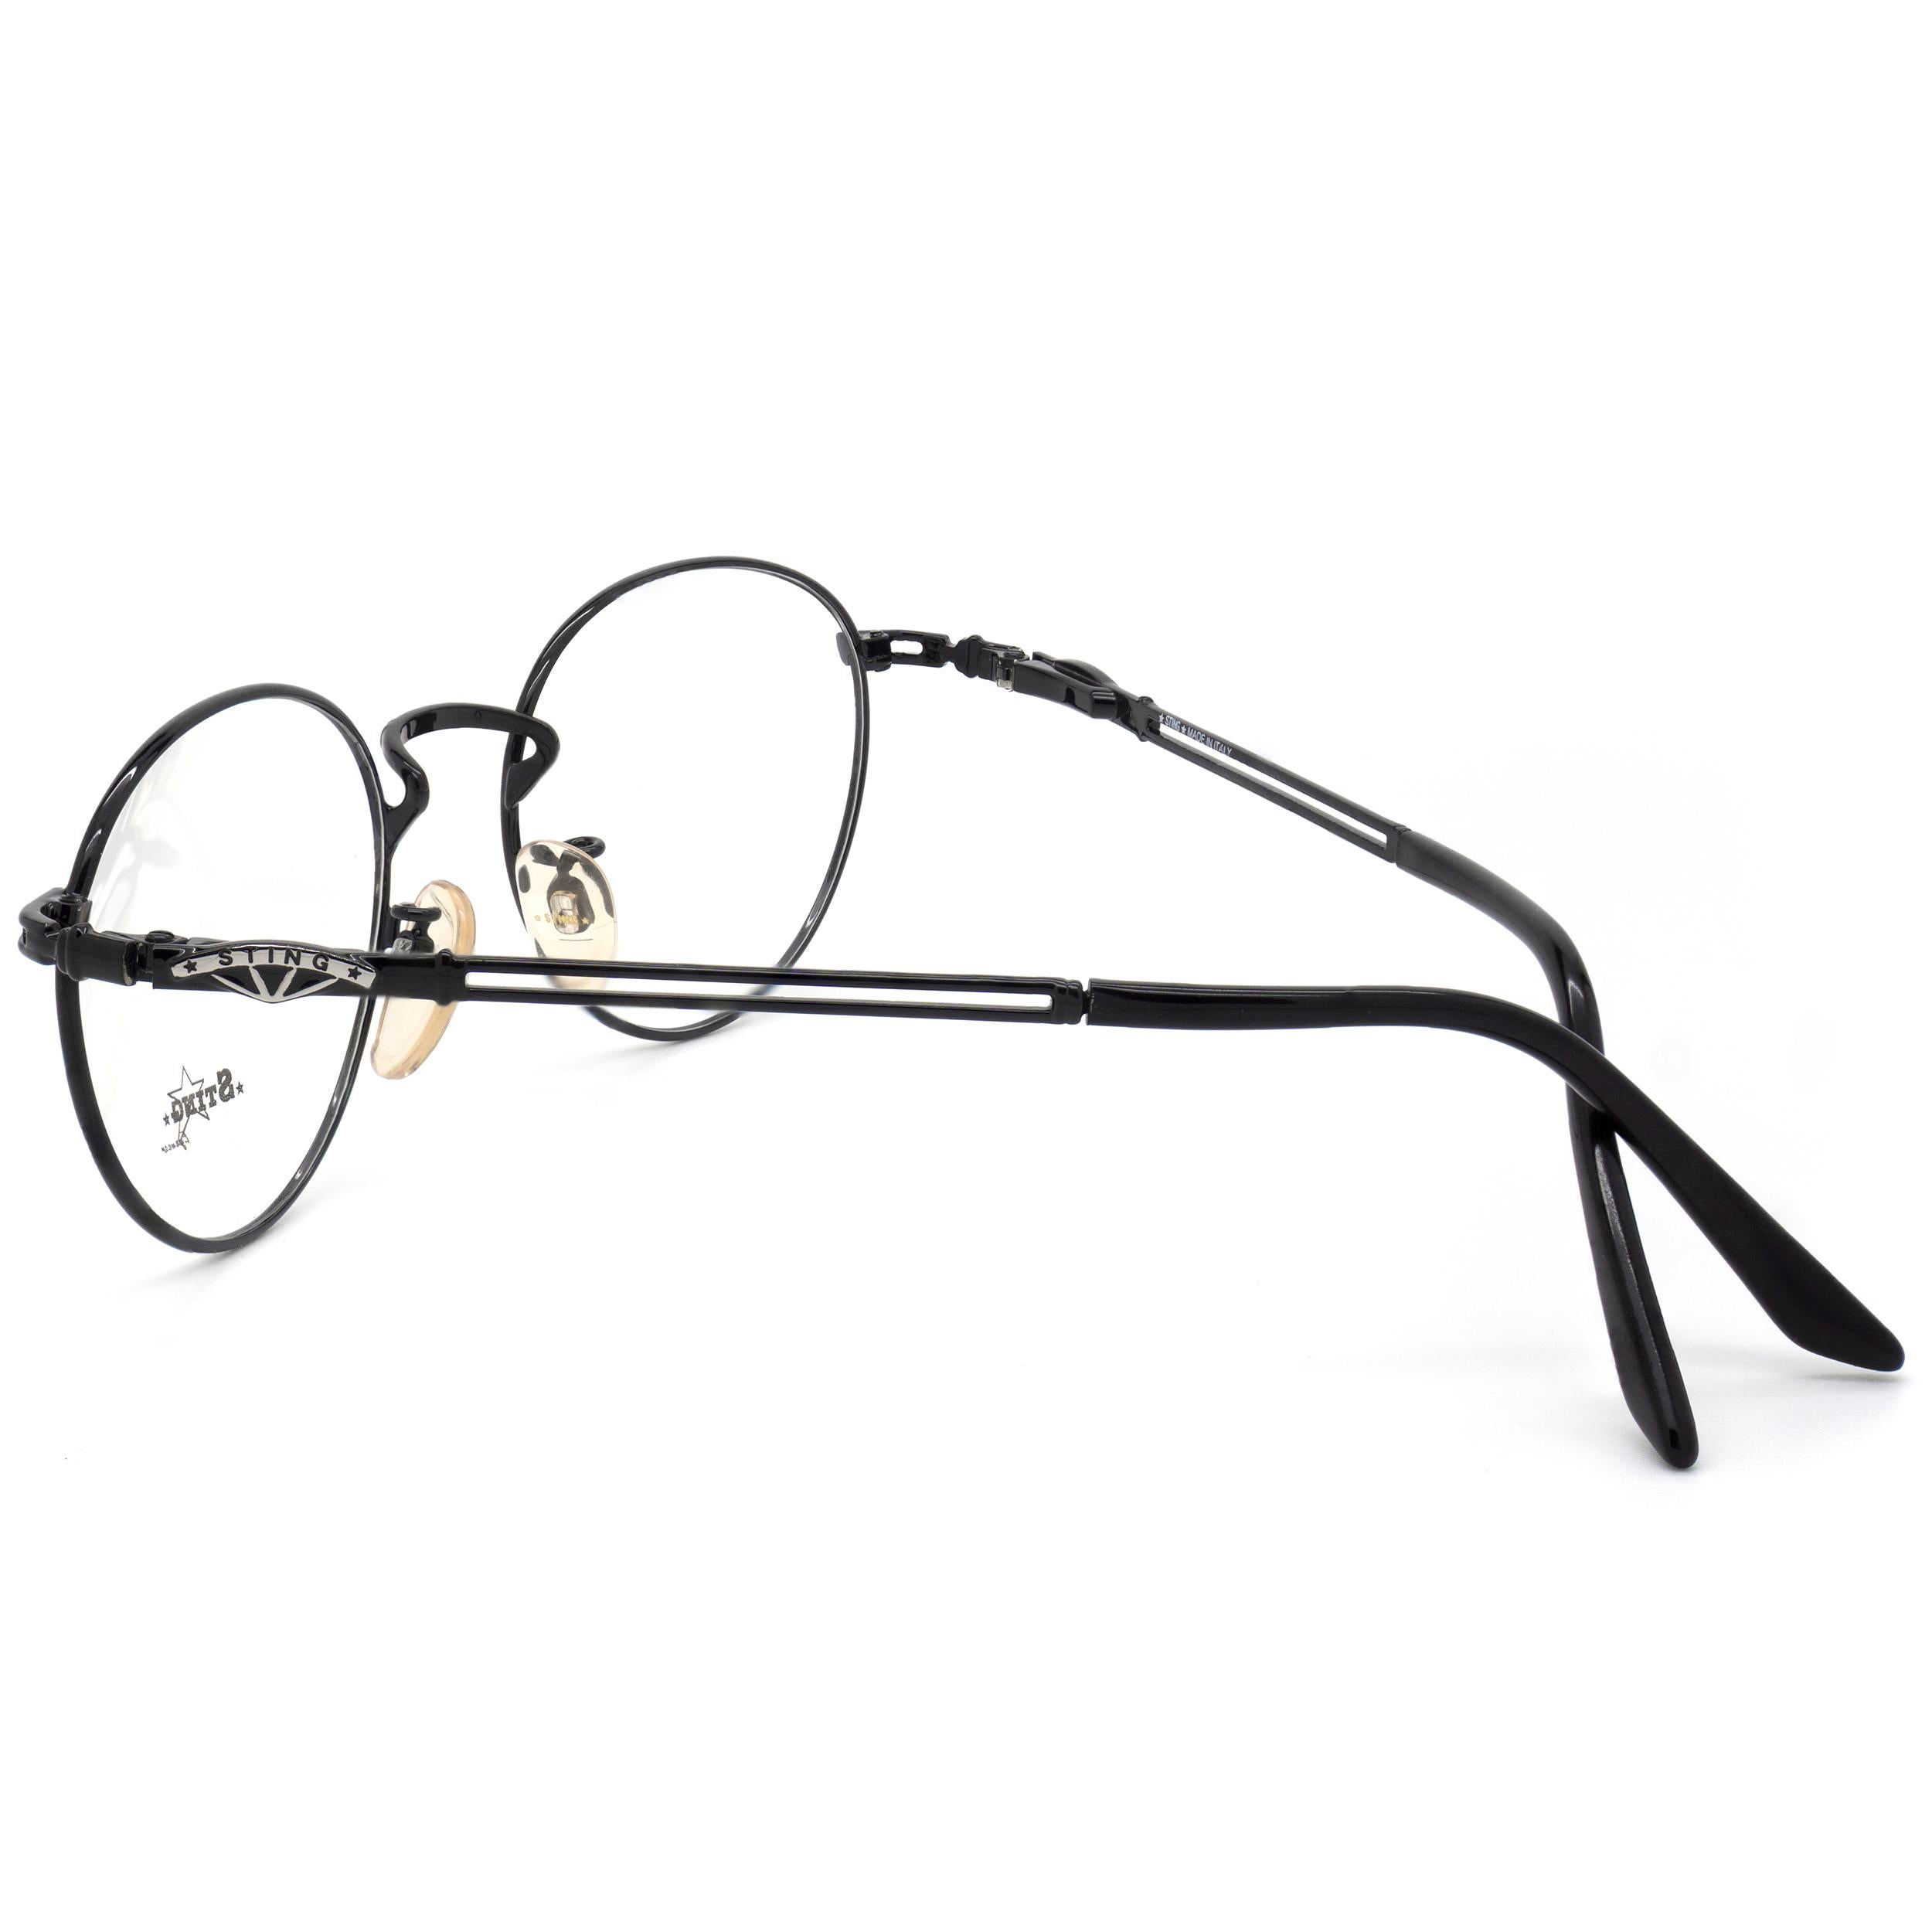 90s style glasses frames